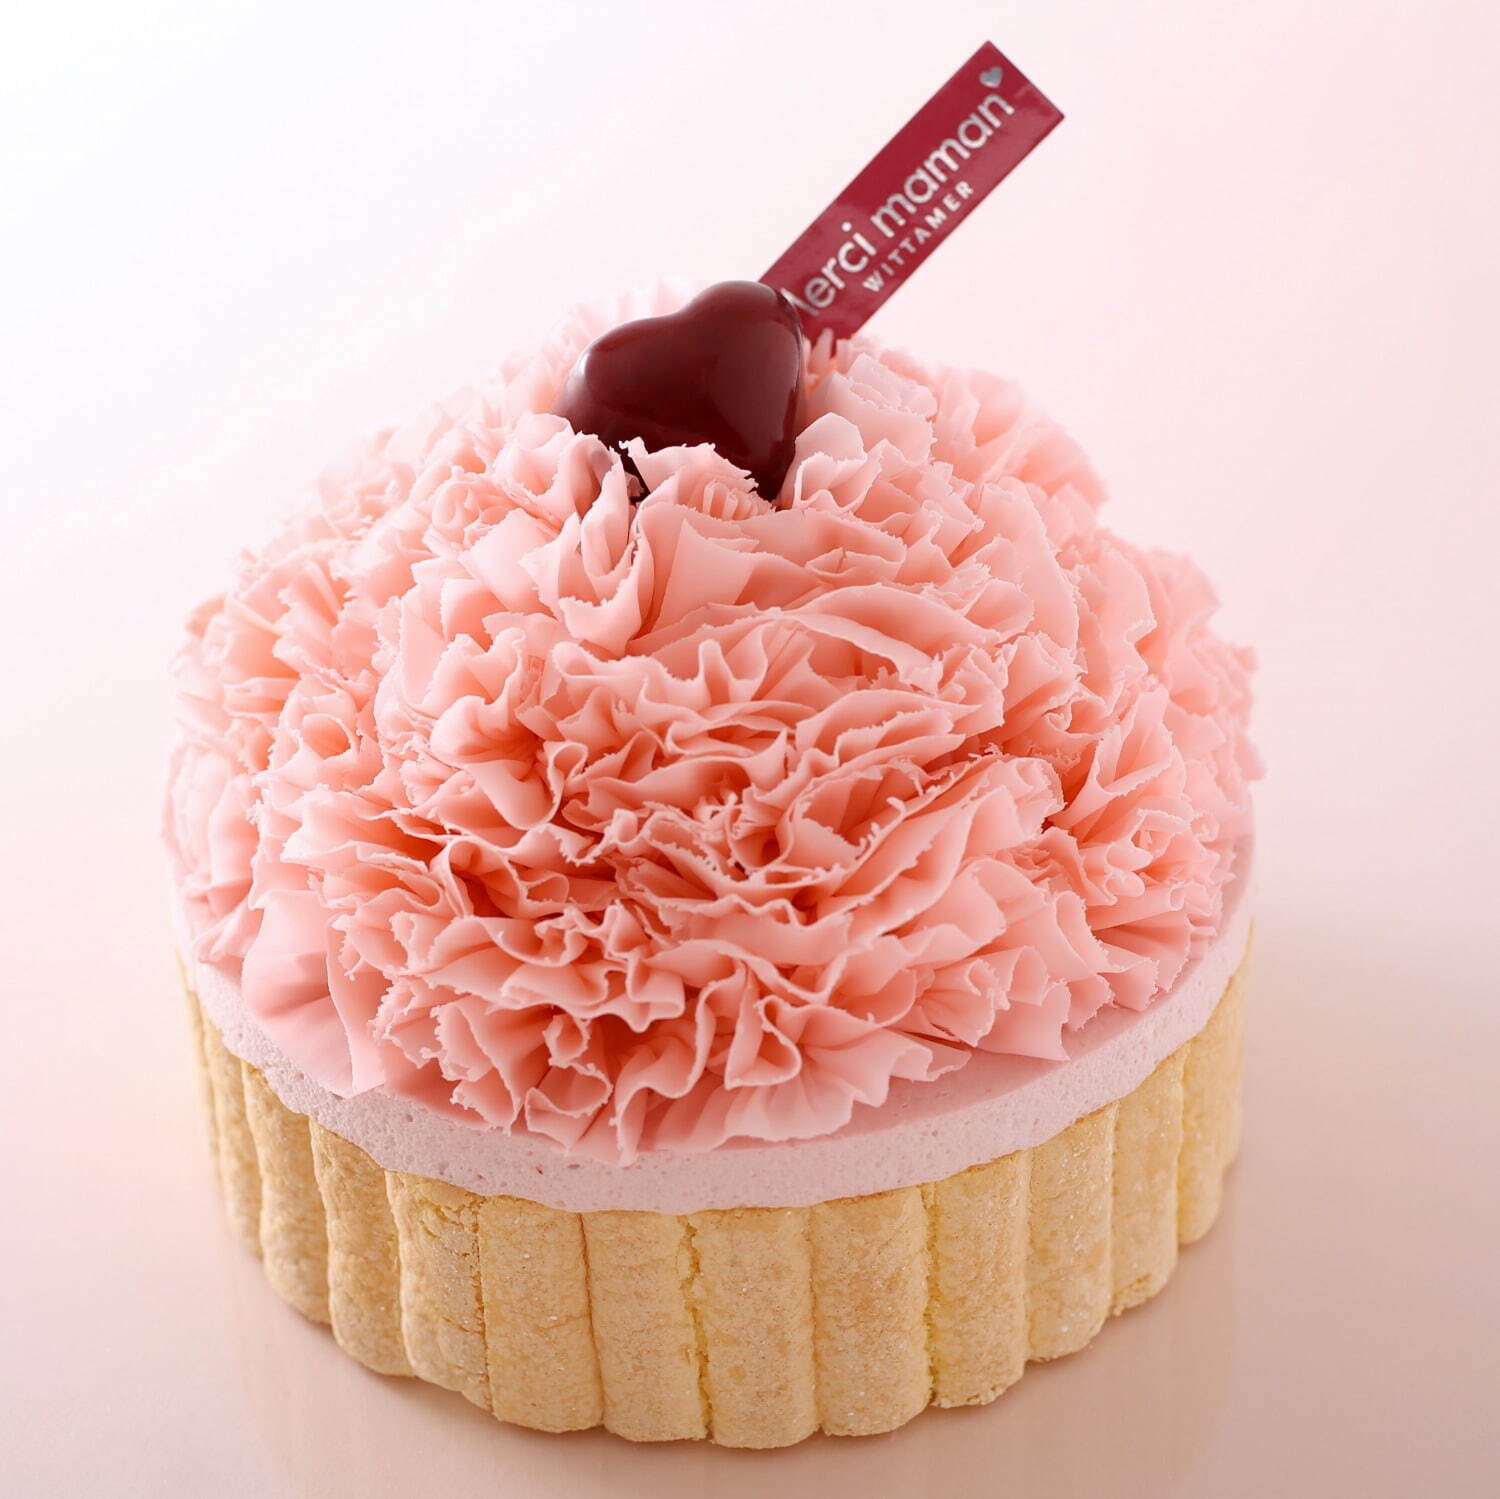 ヴィタメール母の日限定ケーキ、“ピンクカーネーション”の苺ケーキ ...